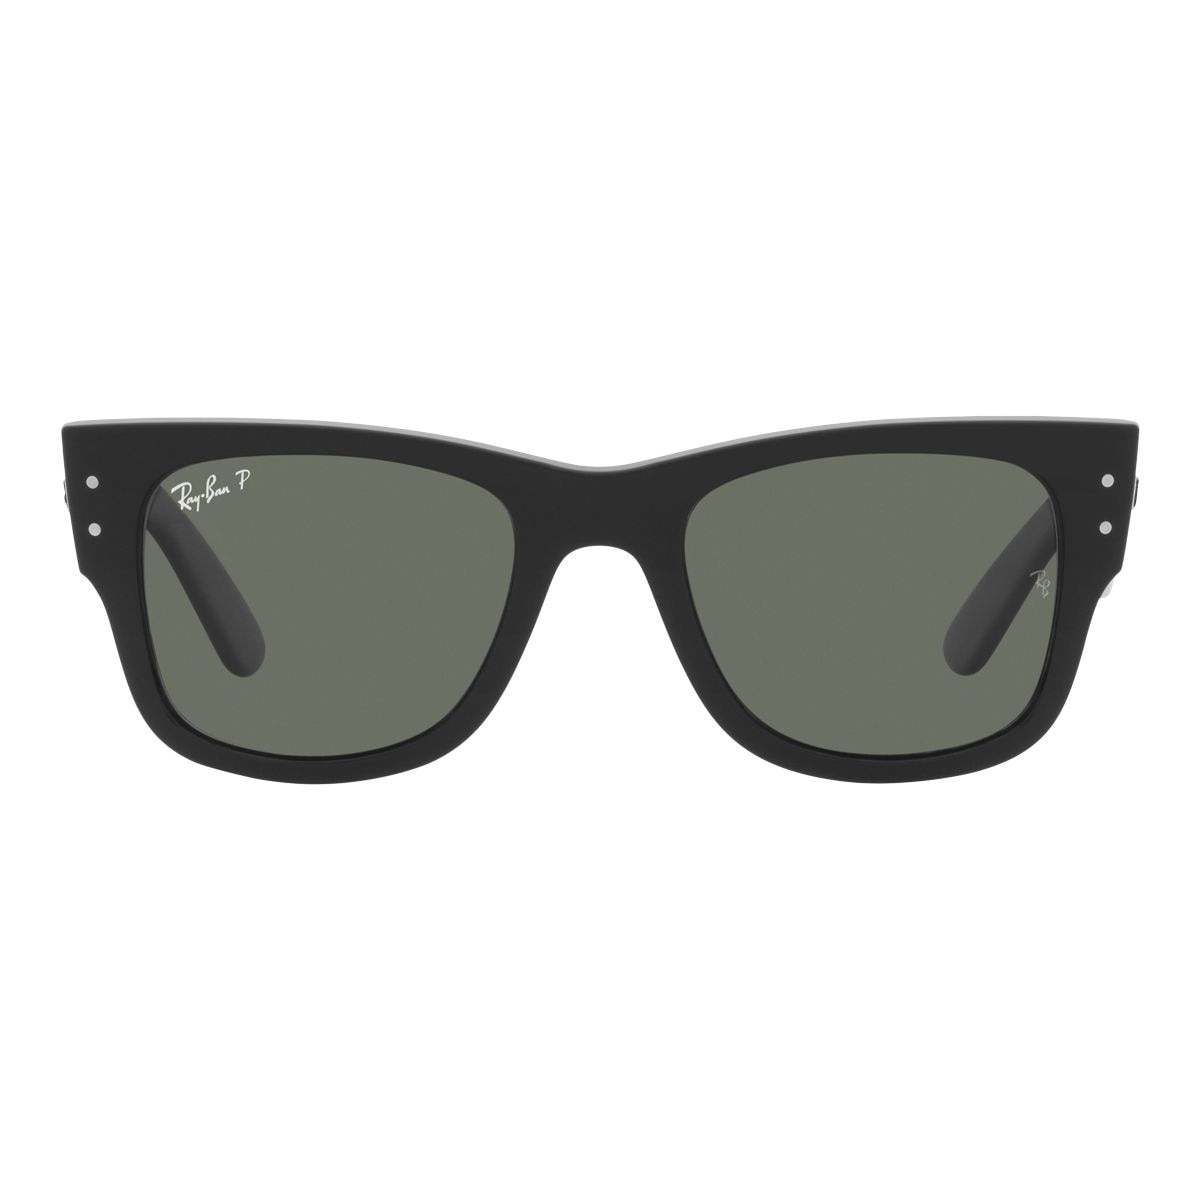 Image of Ray Ban Mega Wayfarer Sunglasses